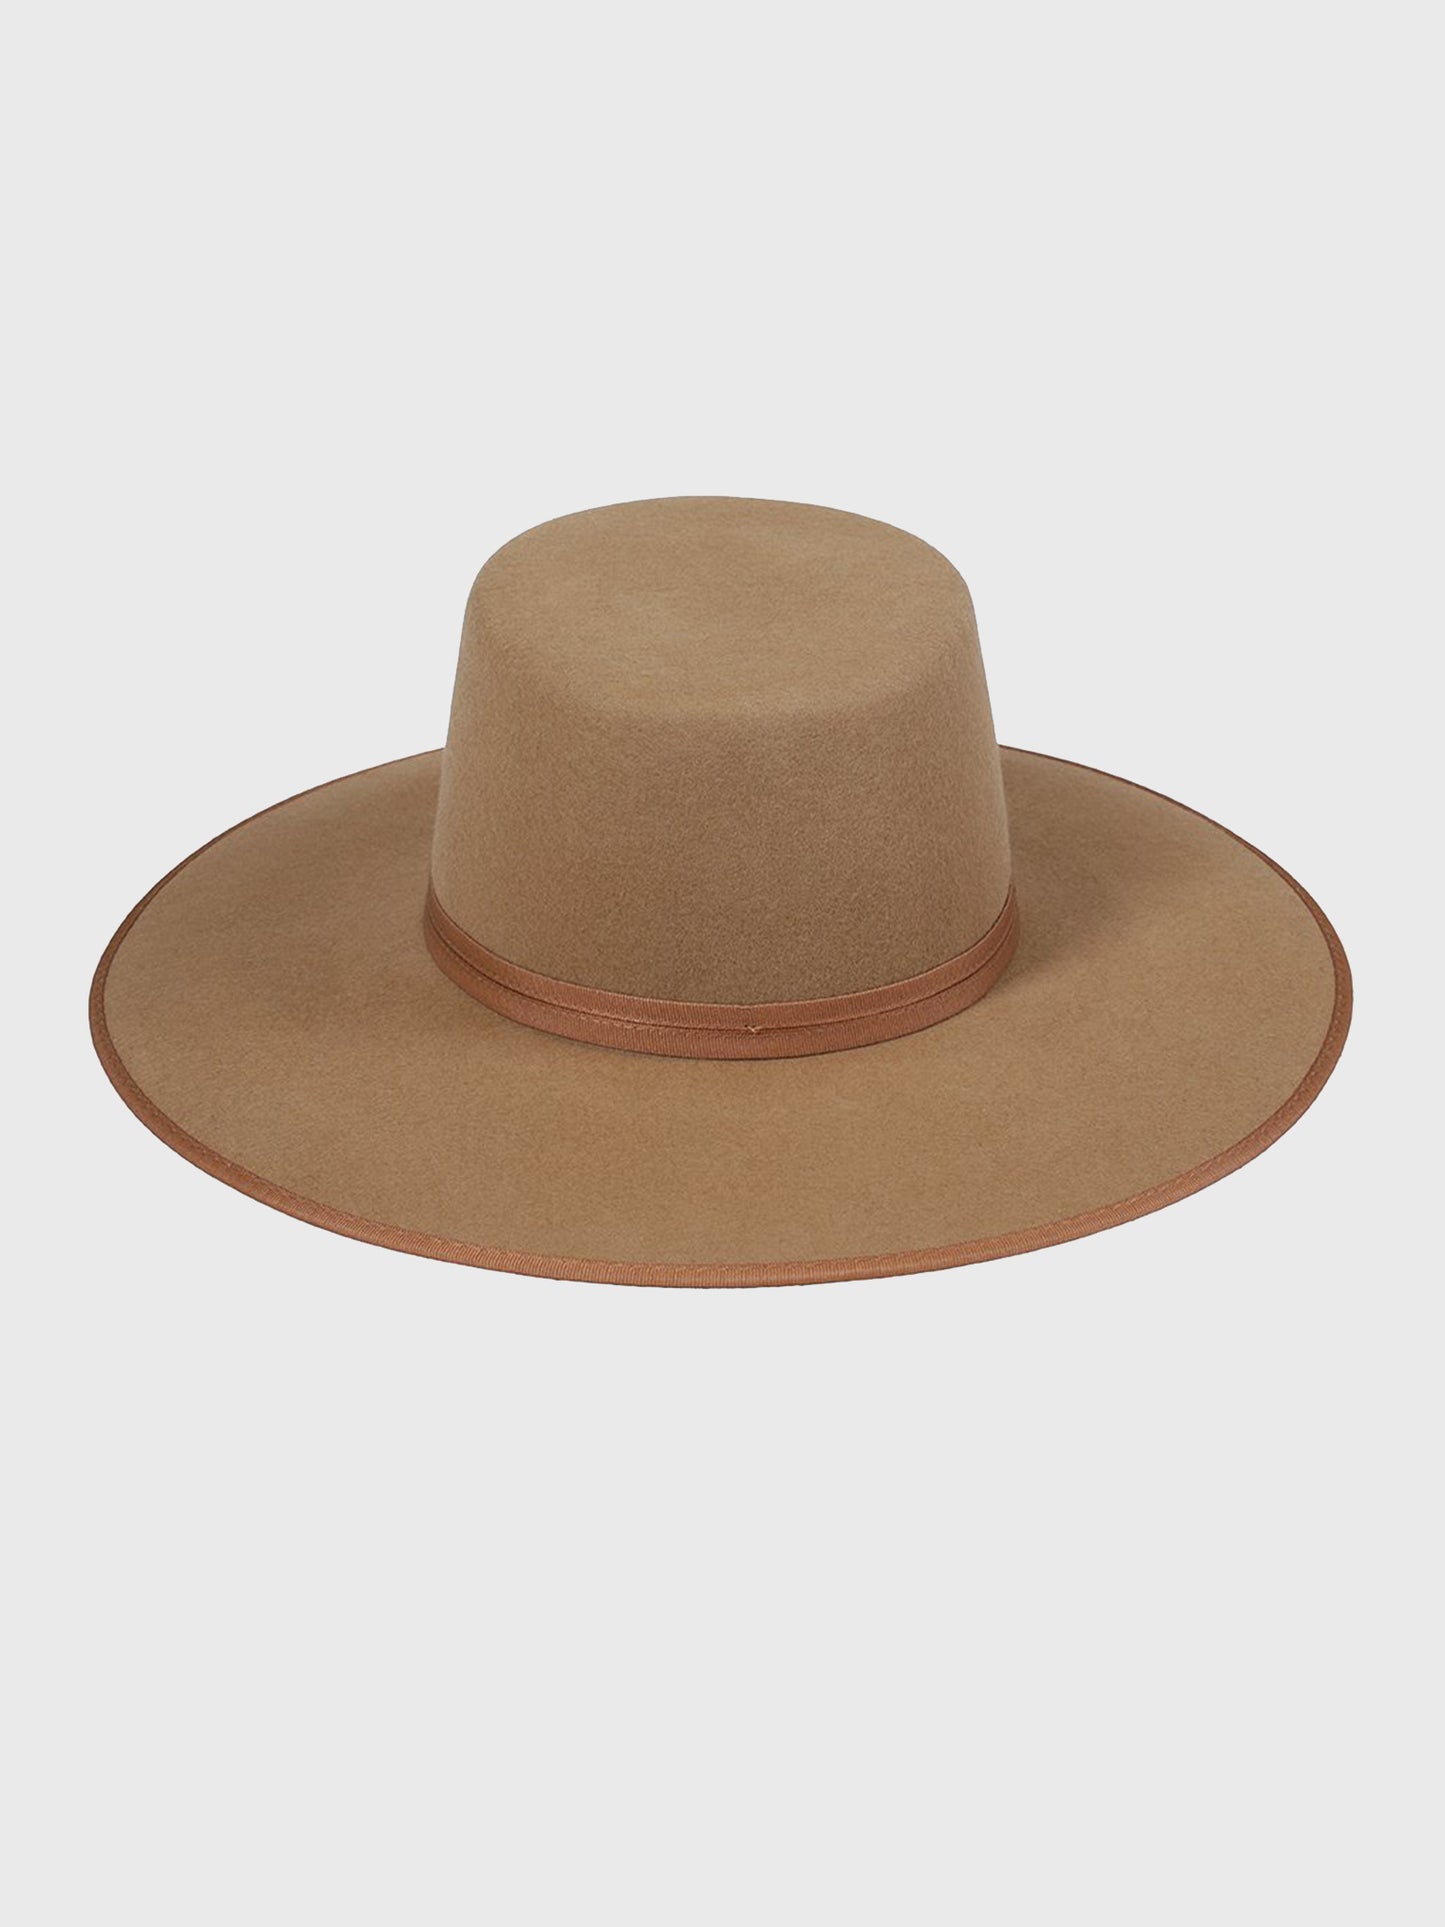 Lack of Color Teak Rancher Boater Hat